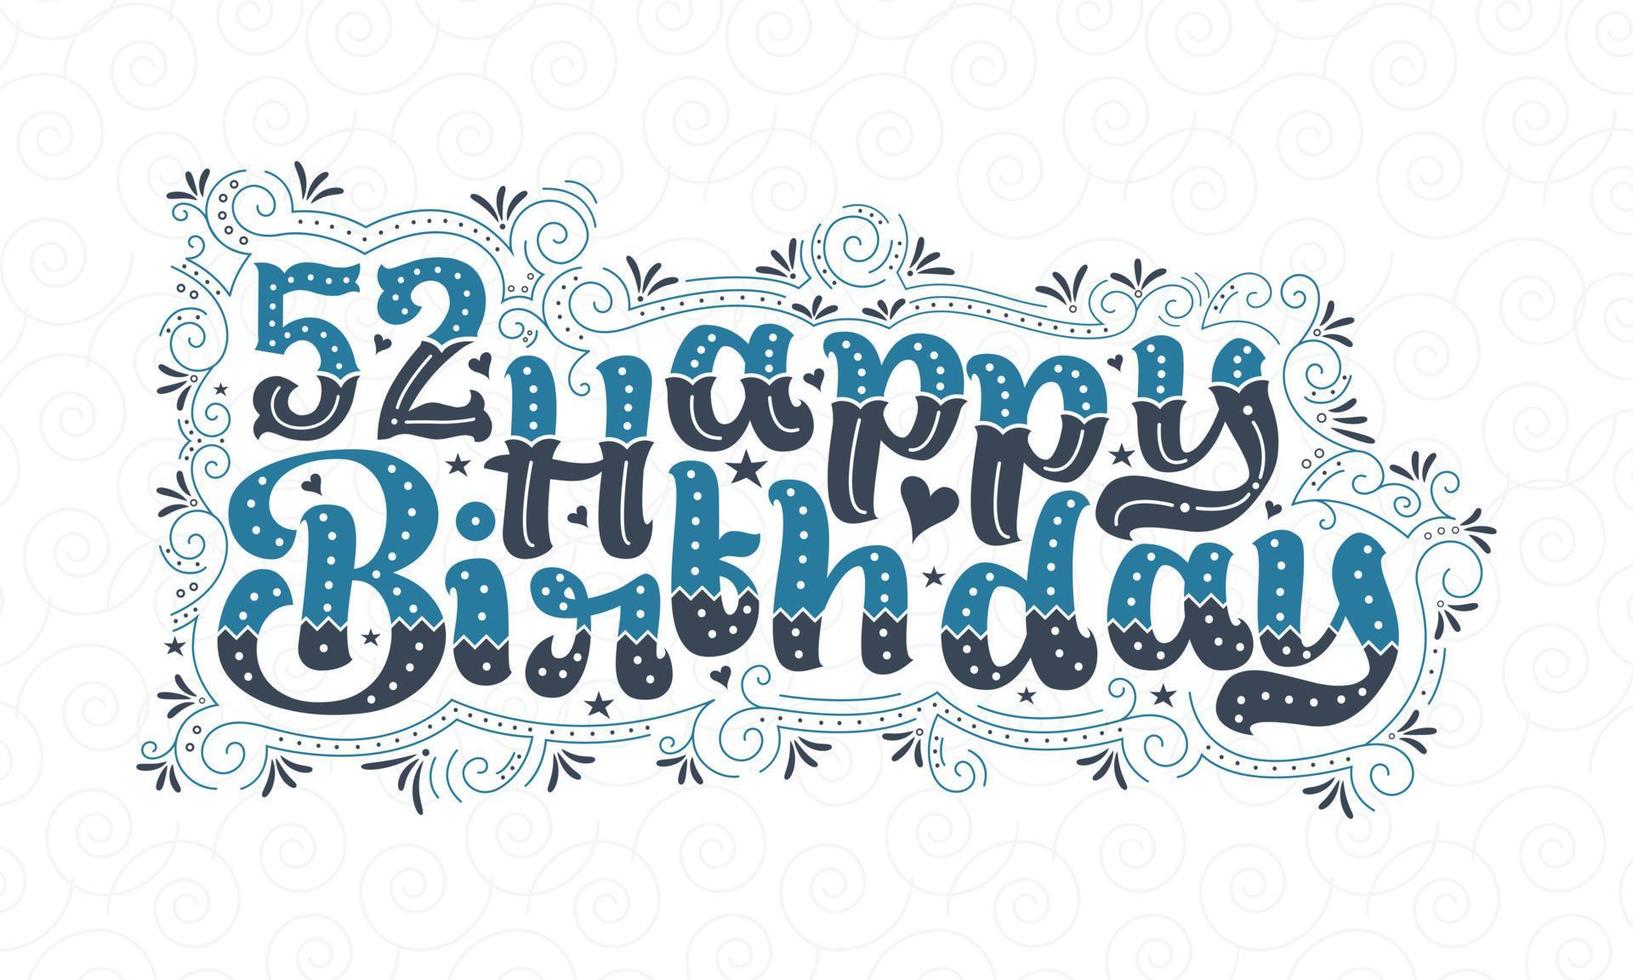 52:a Grattis på födelsedagen bokstäver, 52 års födelsedag vacker typografidesign med blå och svarta prickar, linjer och löv. vektor